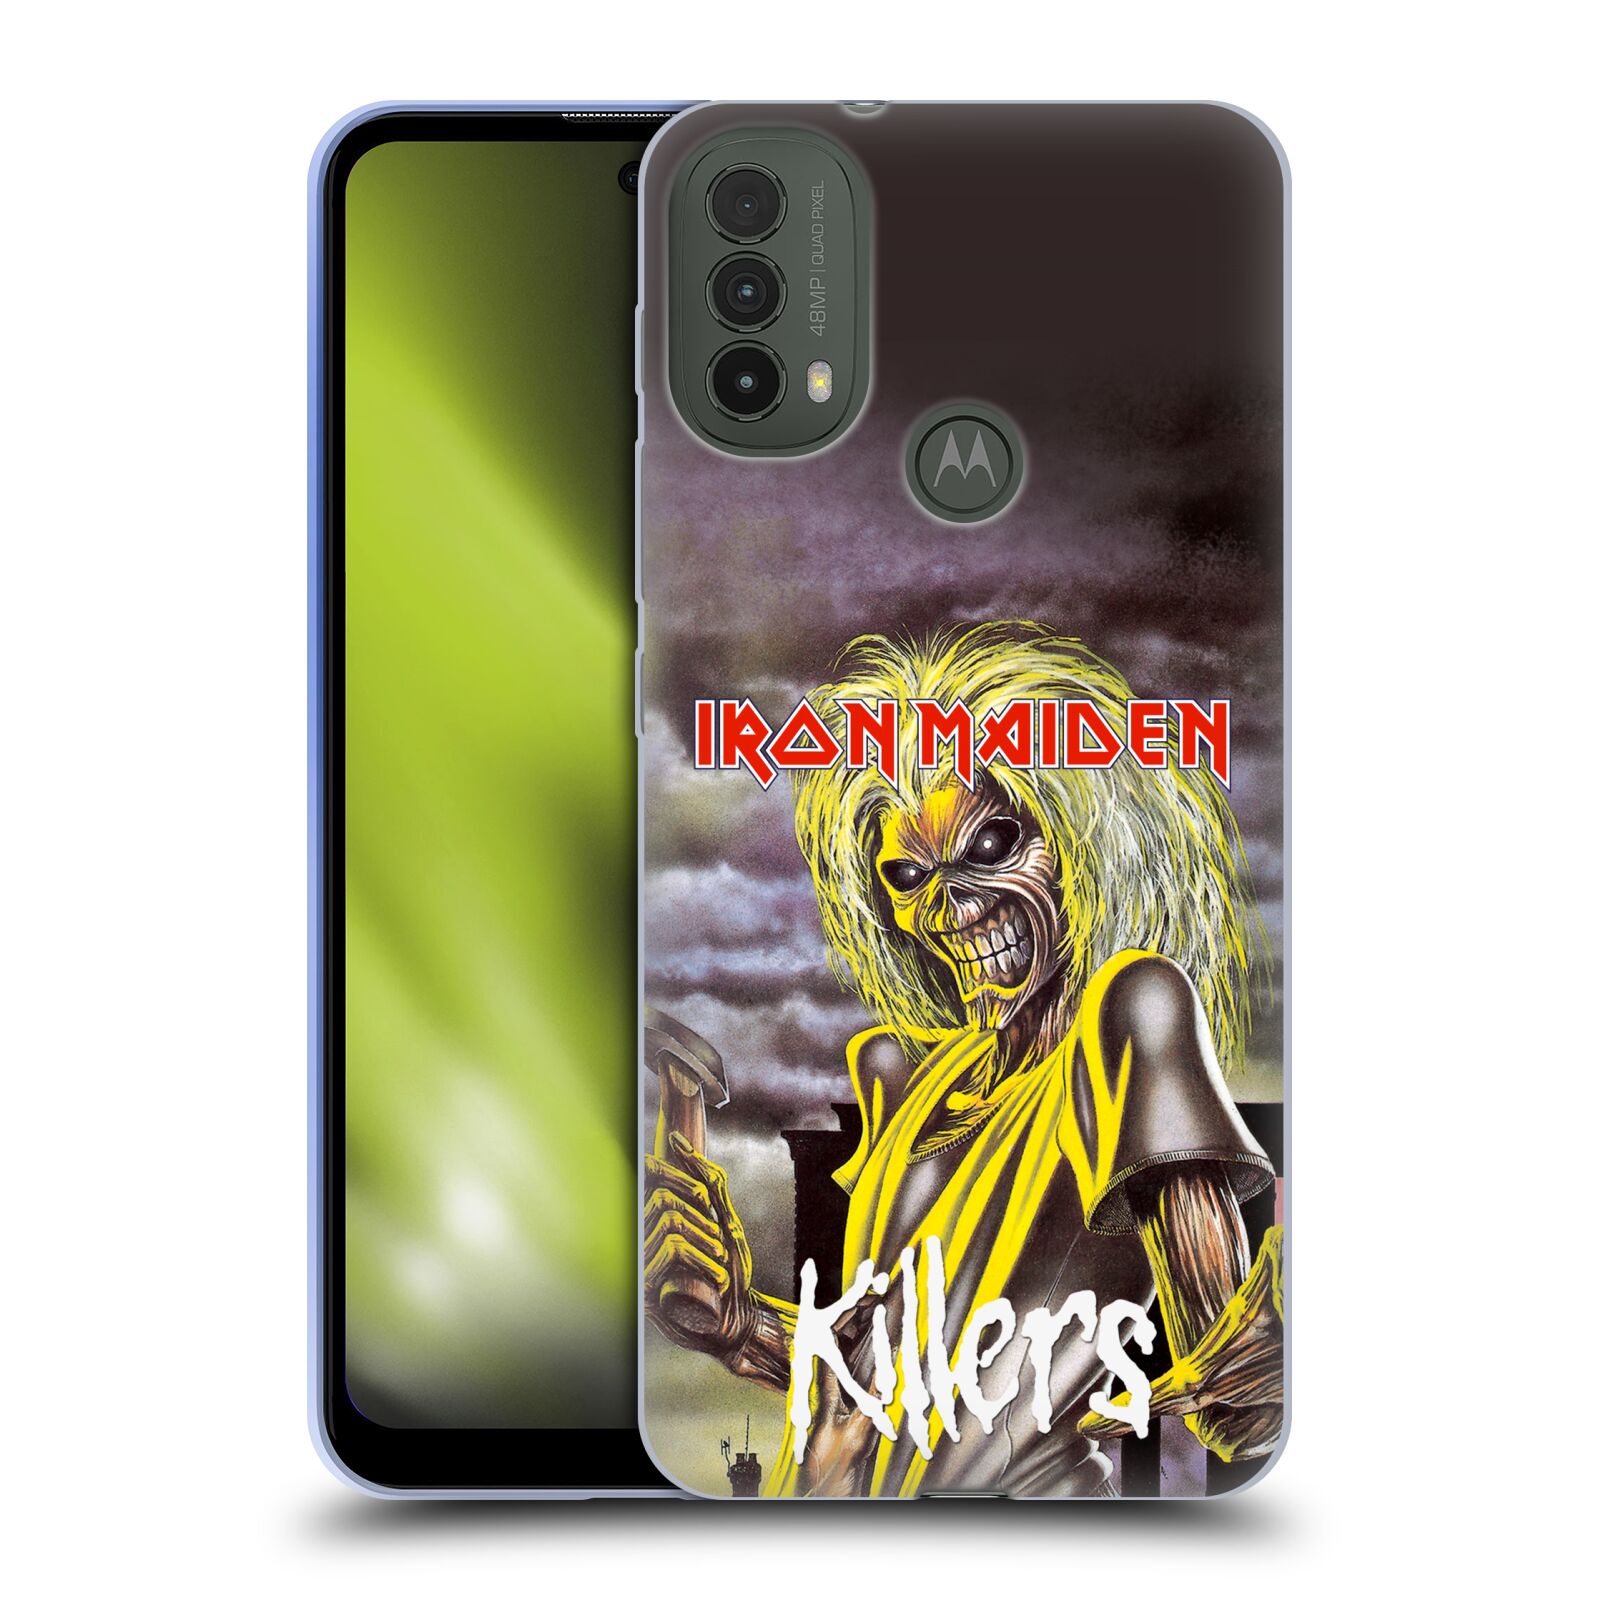 Silikonové pouzdro na mobil Motorola Moto E40 - Head Case - Iron Maiden - Killers